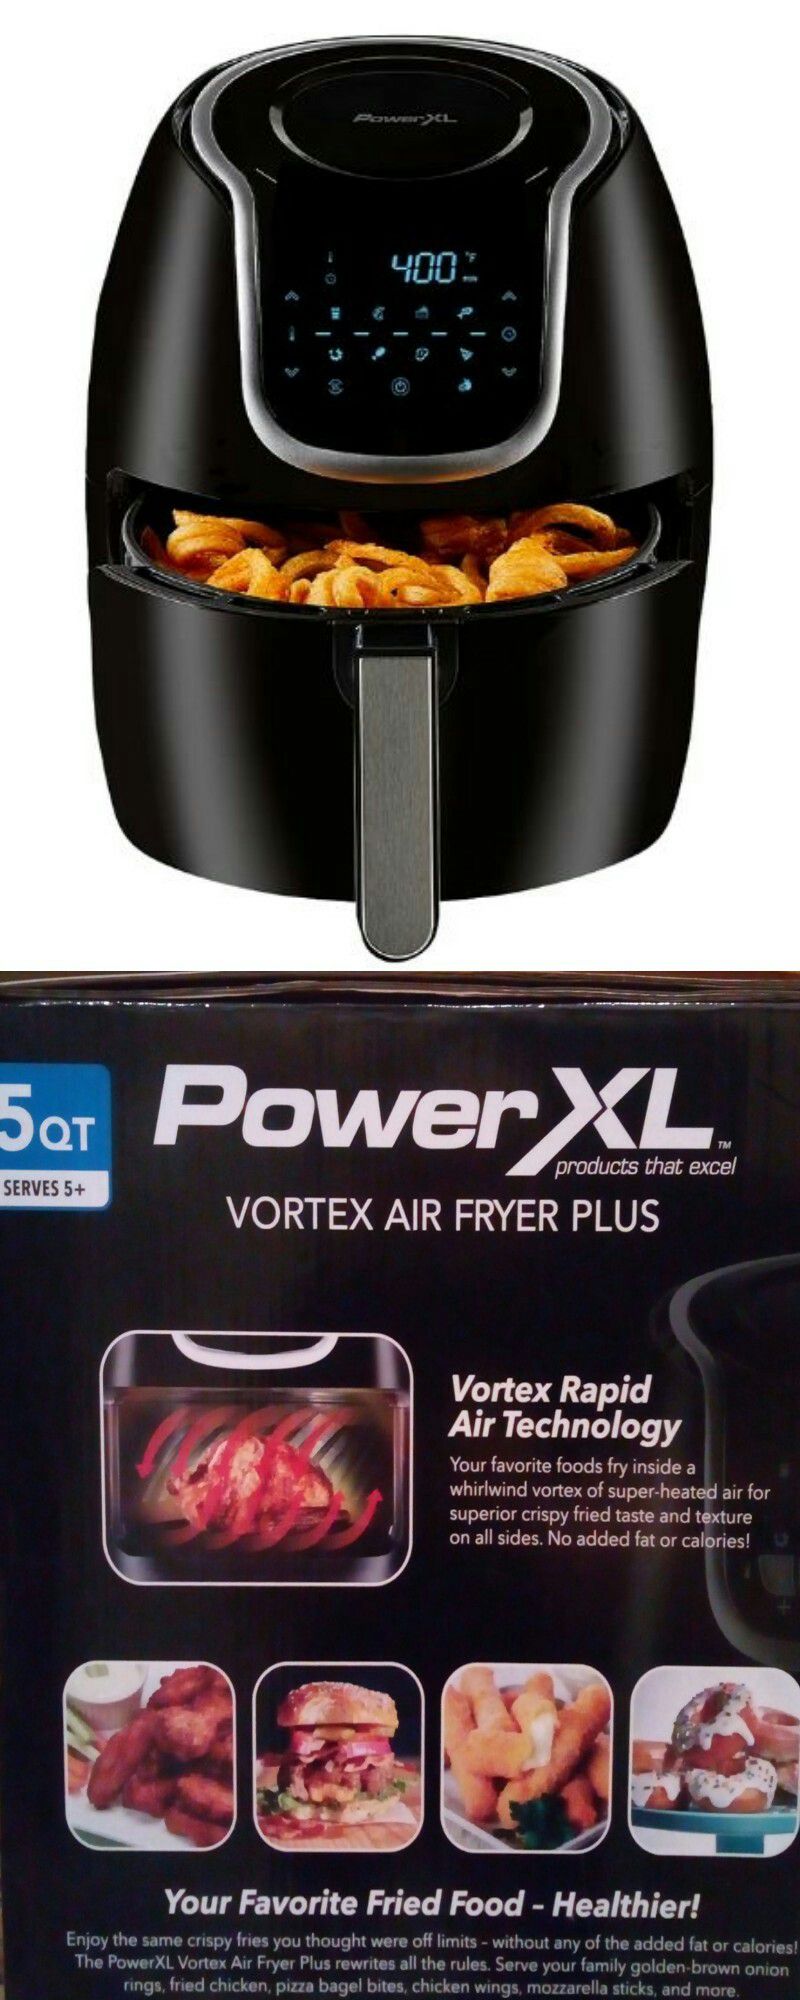  PowerXL Vortex Air Fryer, Vortex Rapid Air Technology